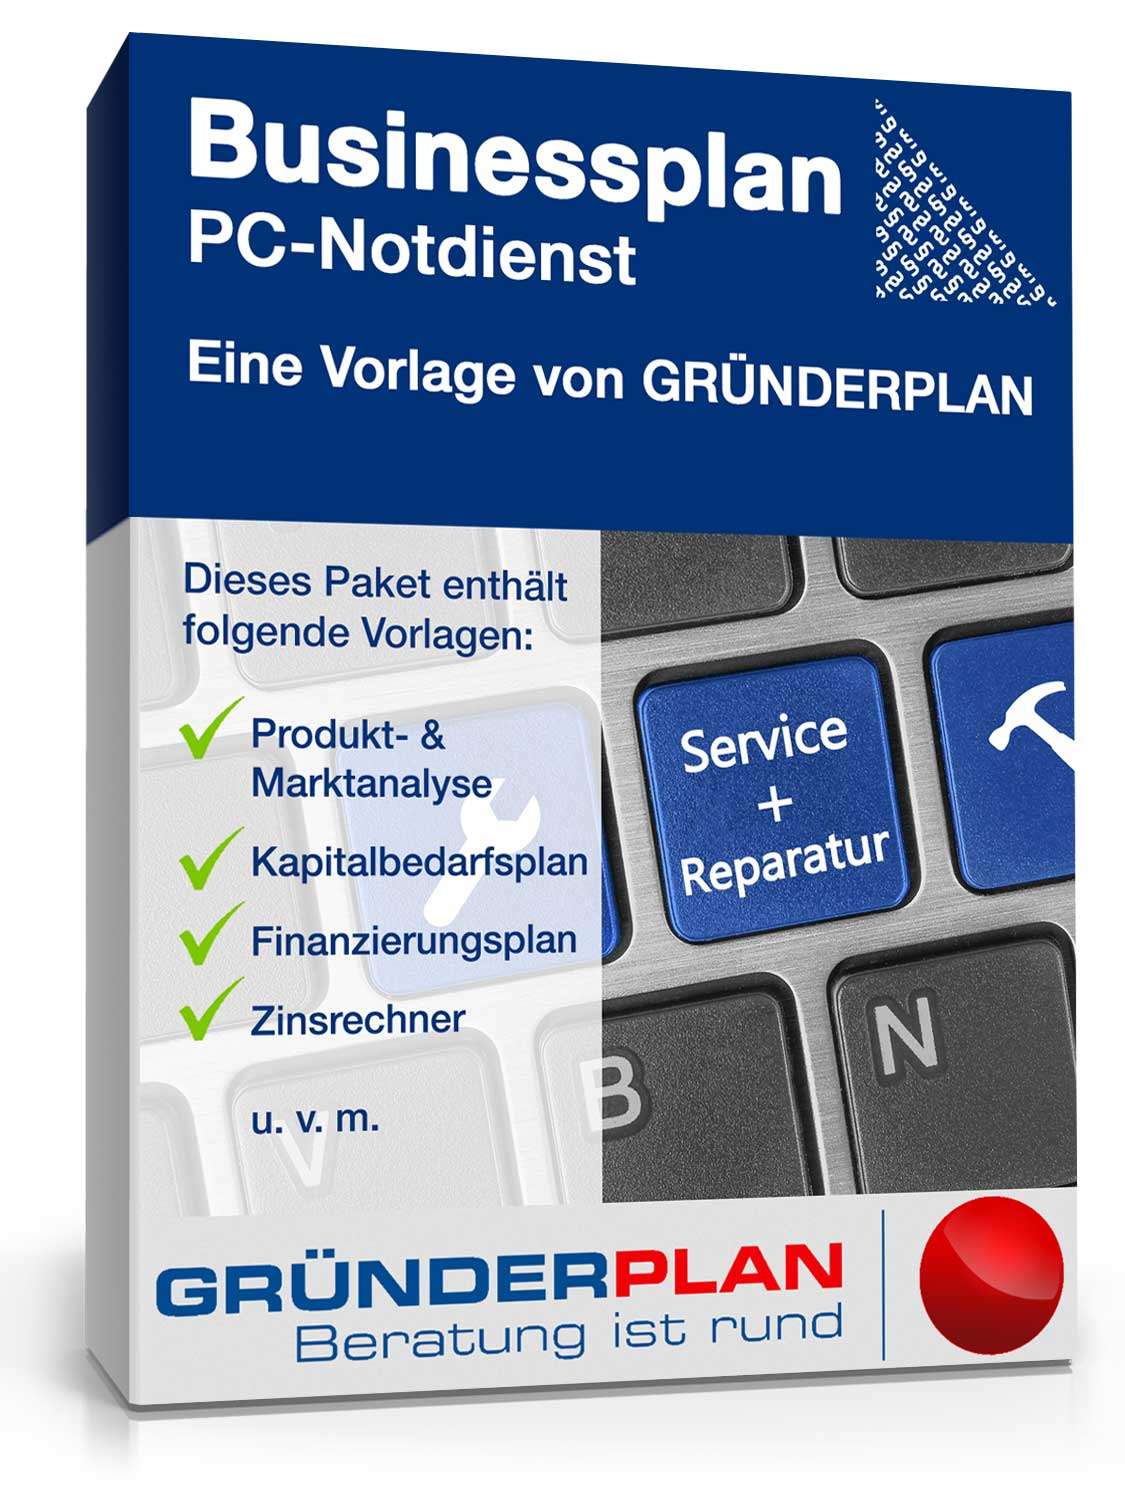 Hauptbild des Produkts: Businessplan PC-Notdienst von Gründerplan